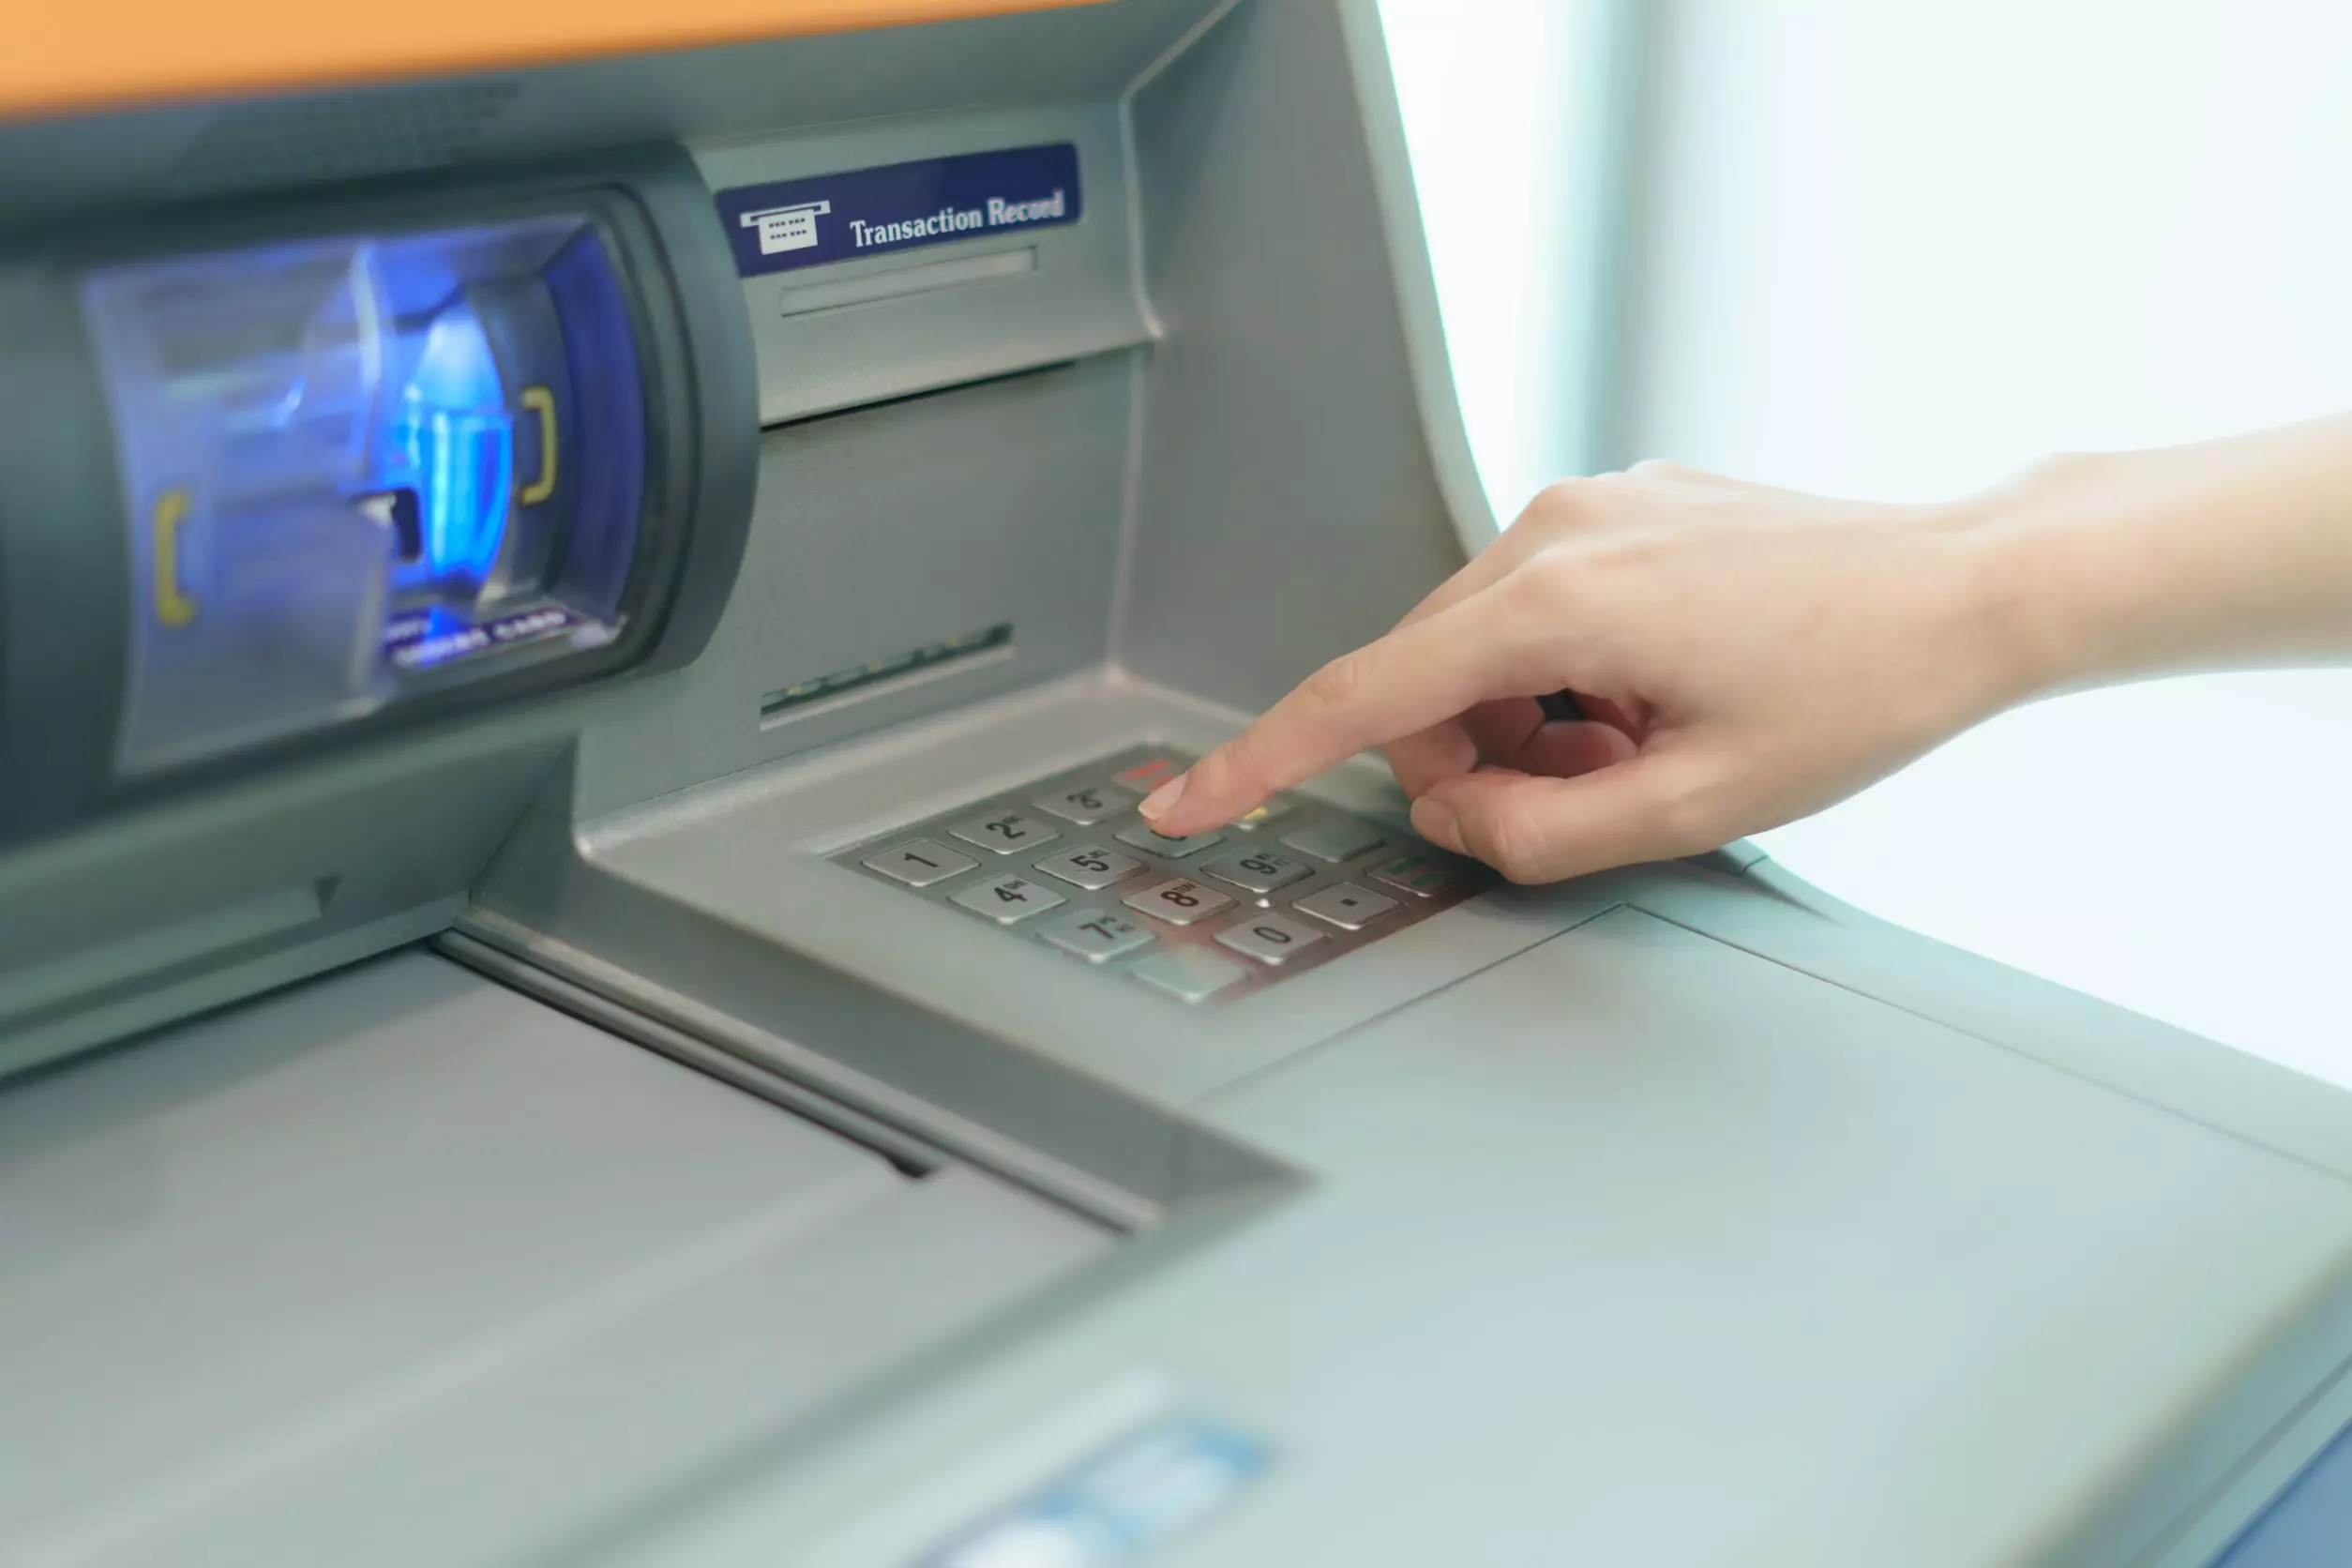 cara transfer uang lewat ATM